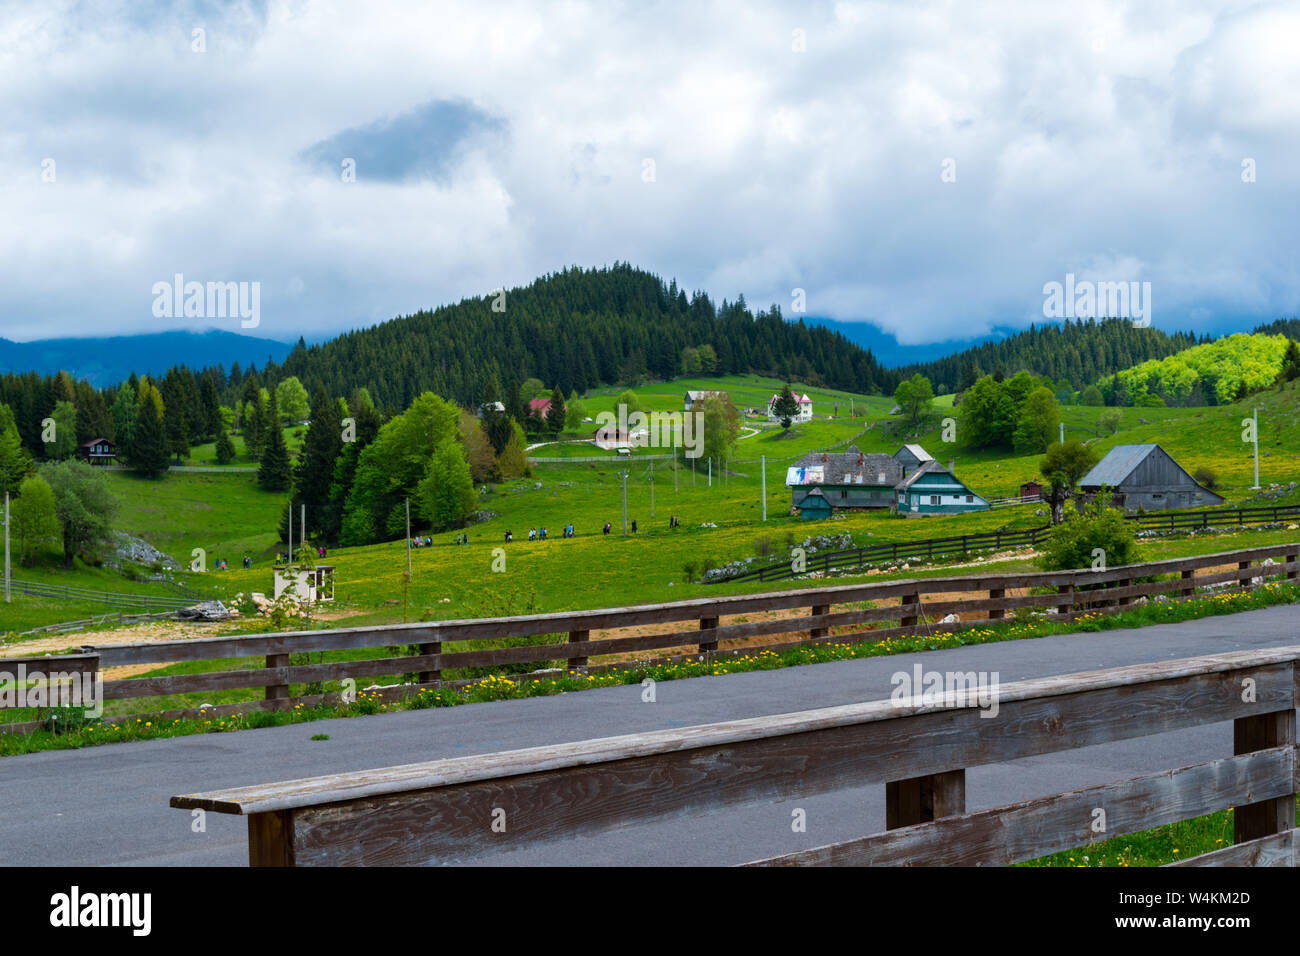 Cheile Gradistei, Fundata, Rumänien - Mai 25, 2019: Schöne Landschaft der Cheile Gradistei, Fundata, Brasov, Rumänien. Stockfoto